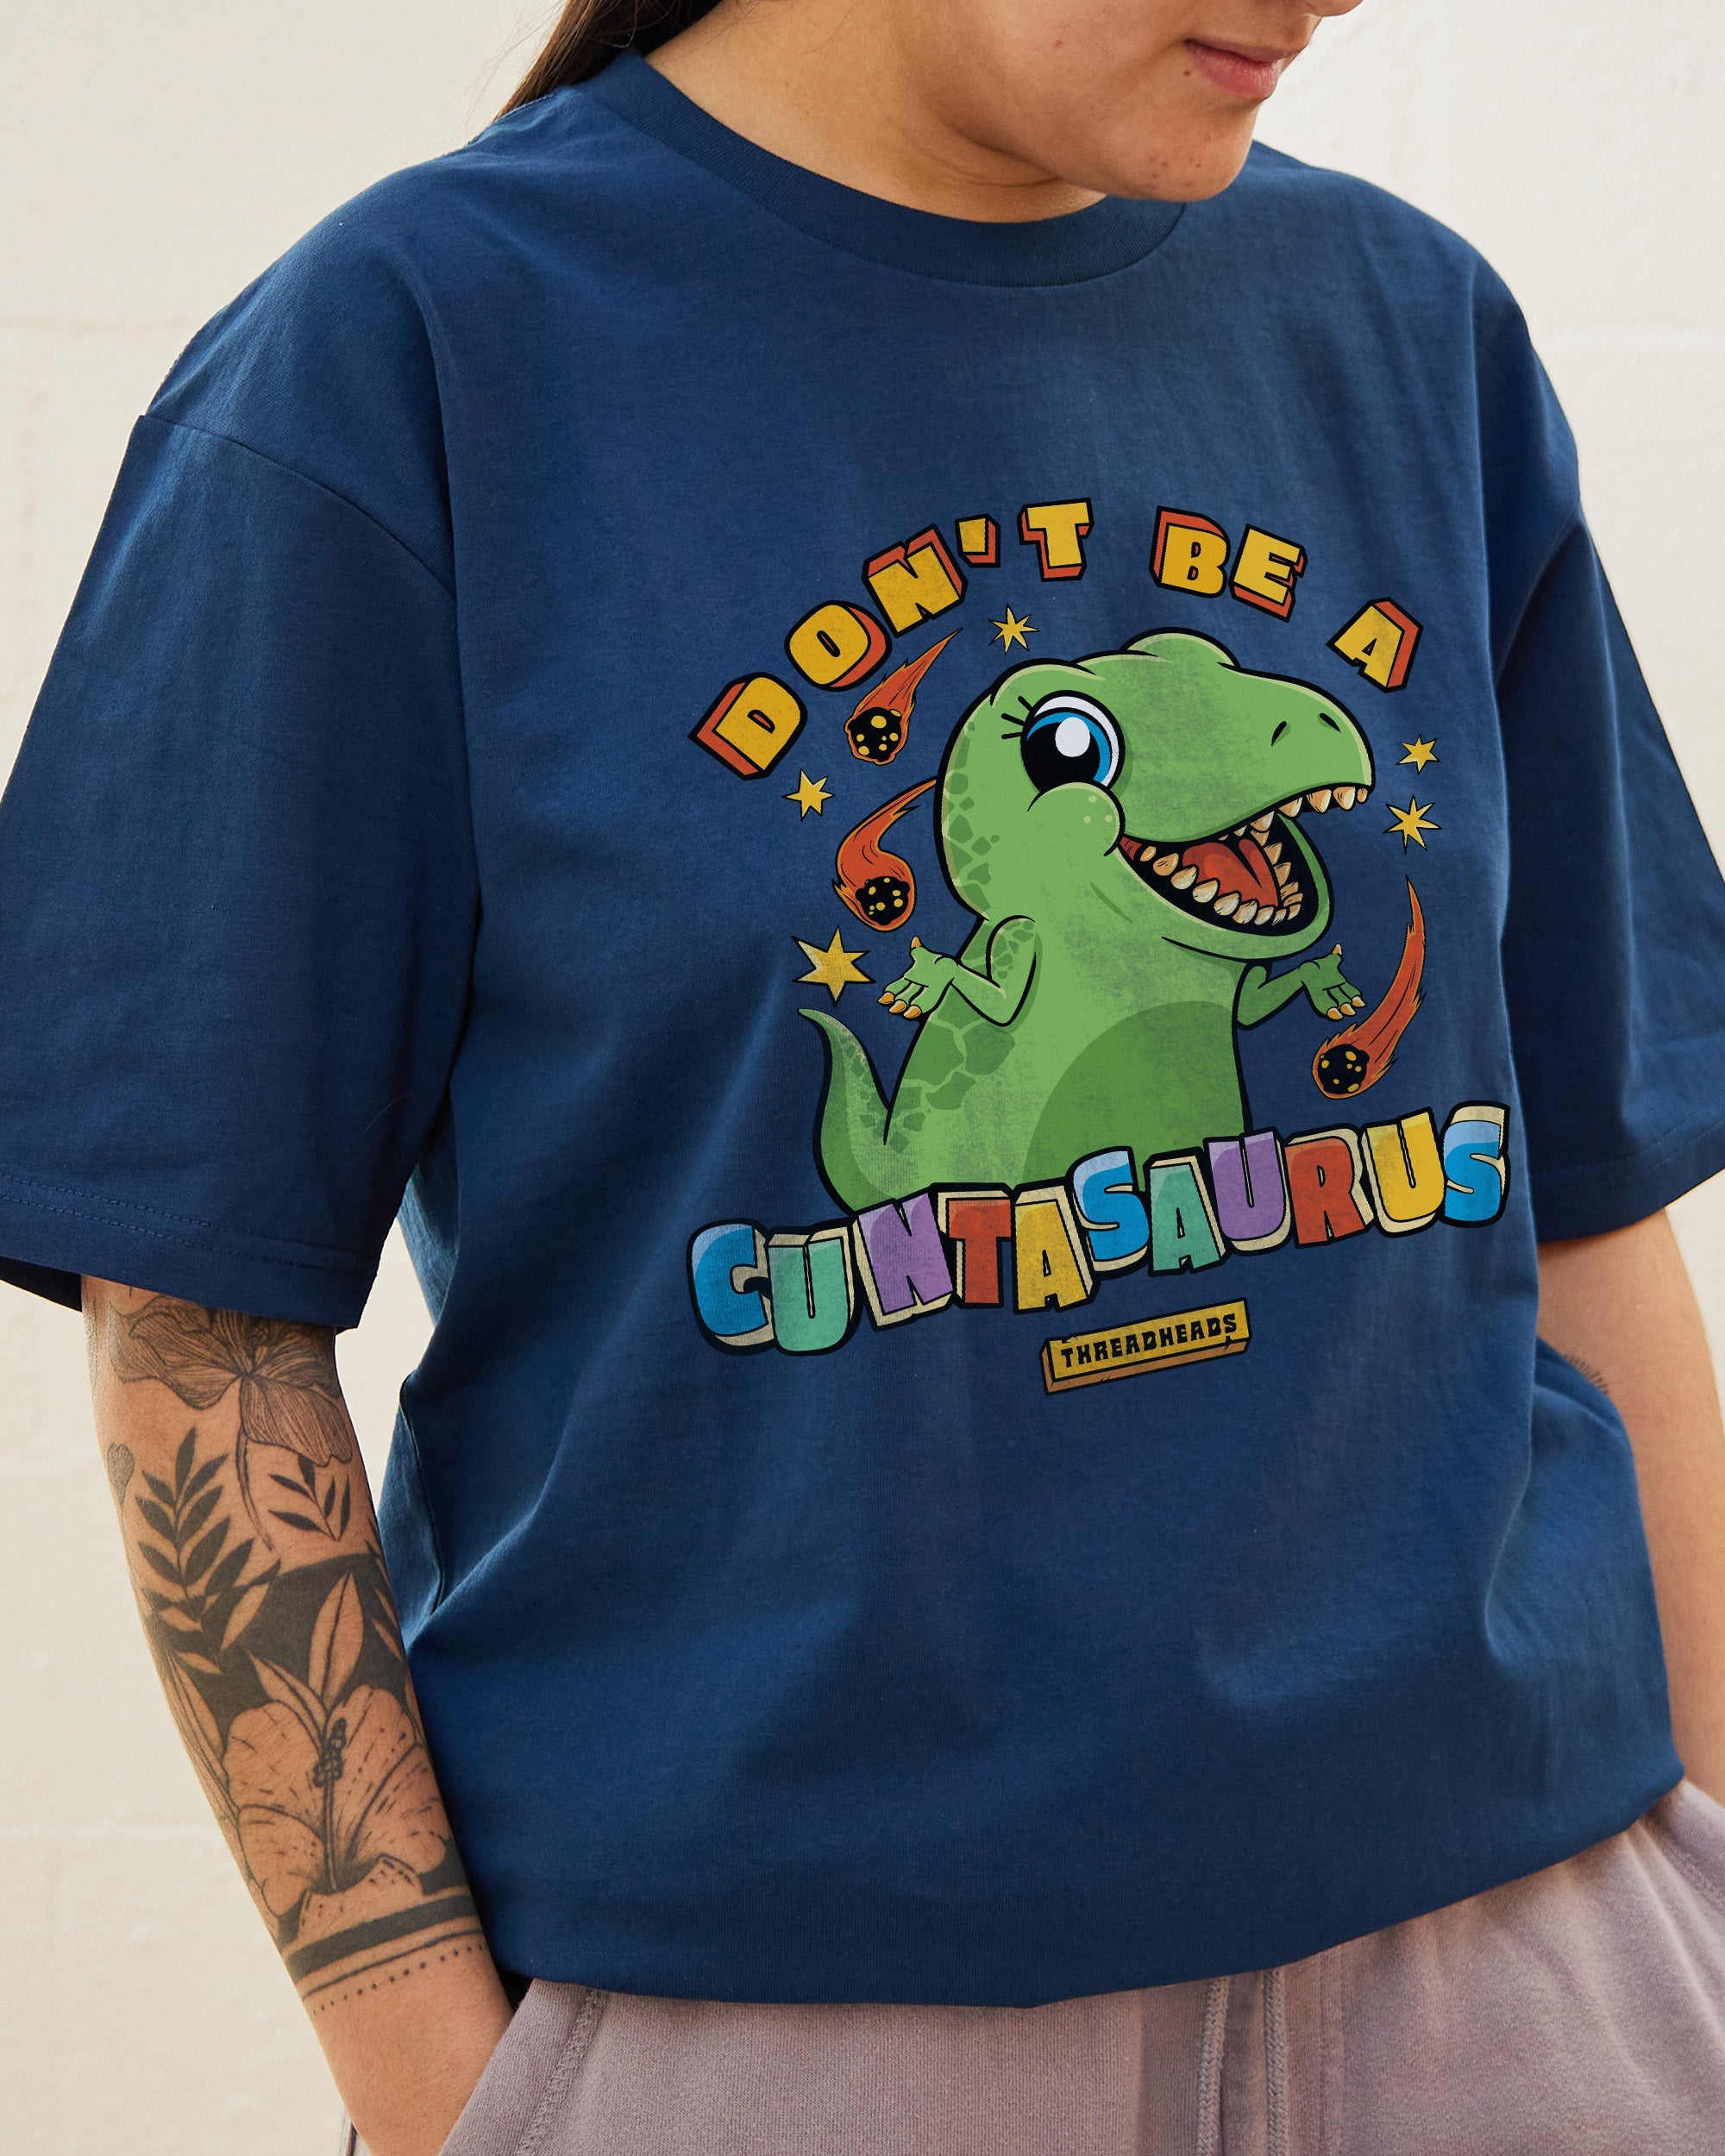 Don't Be A Cuntasaurus T-Shirt Australia Online Navy